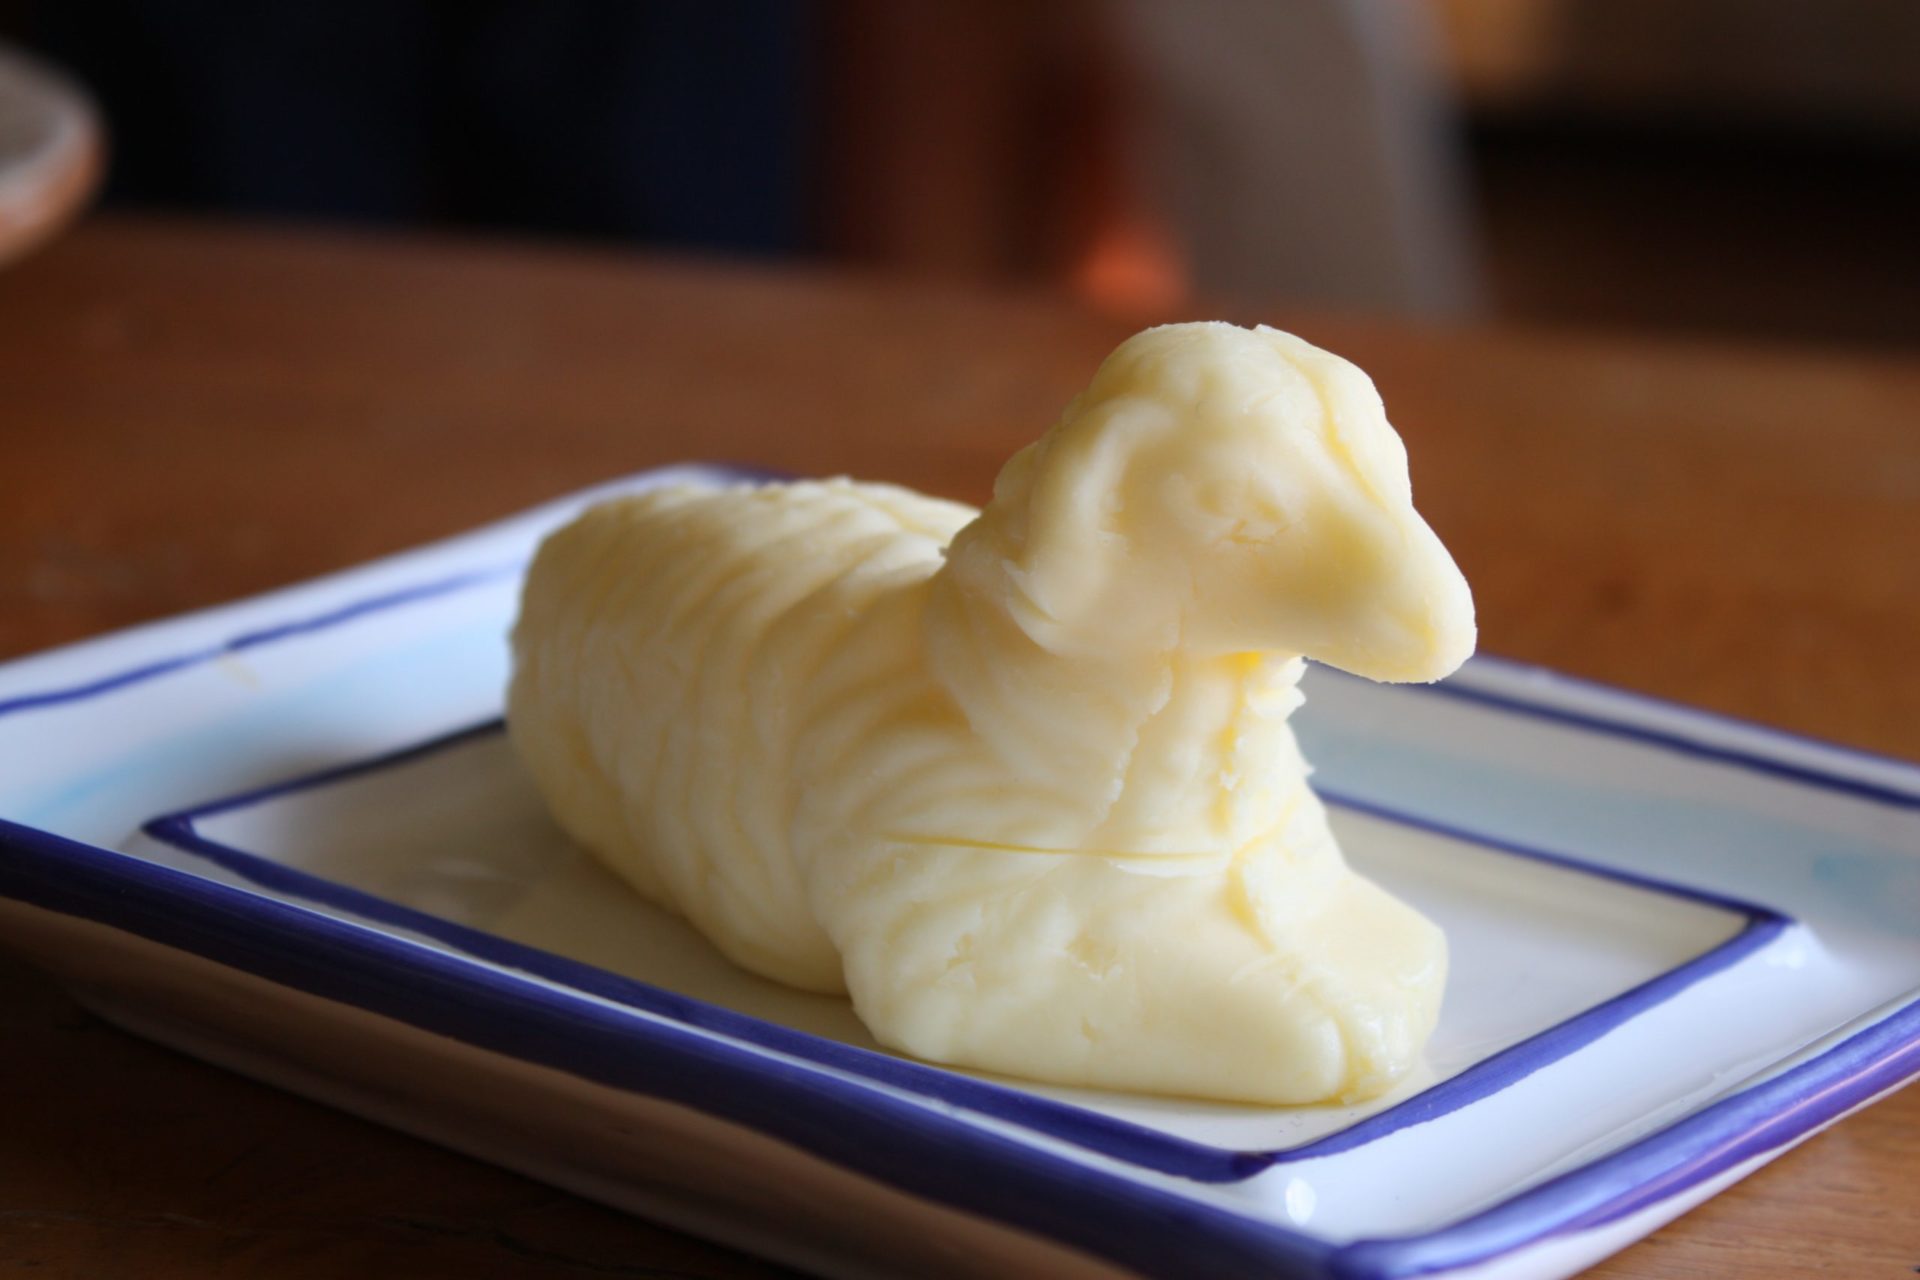 Every dinner needs a good butter lamb!